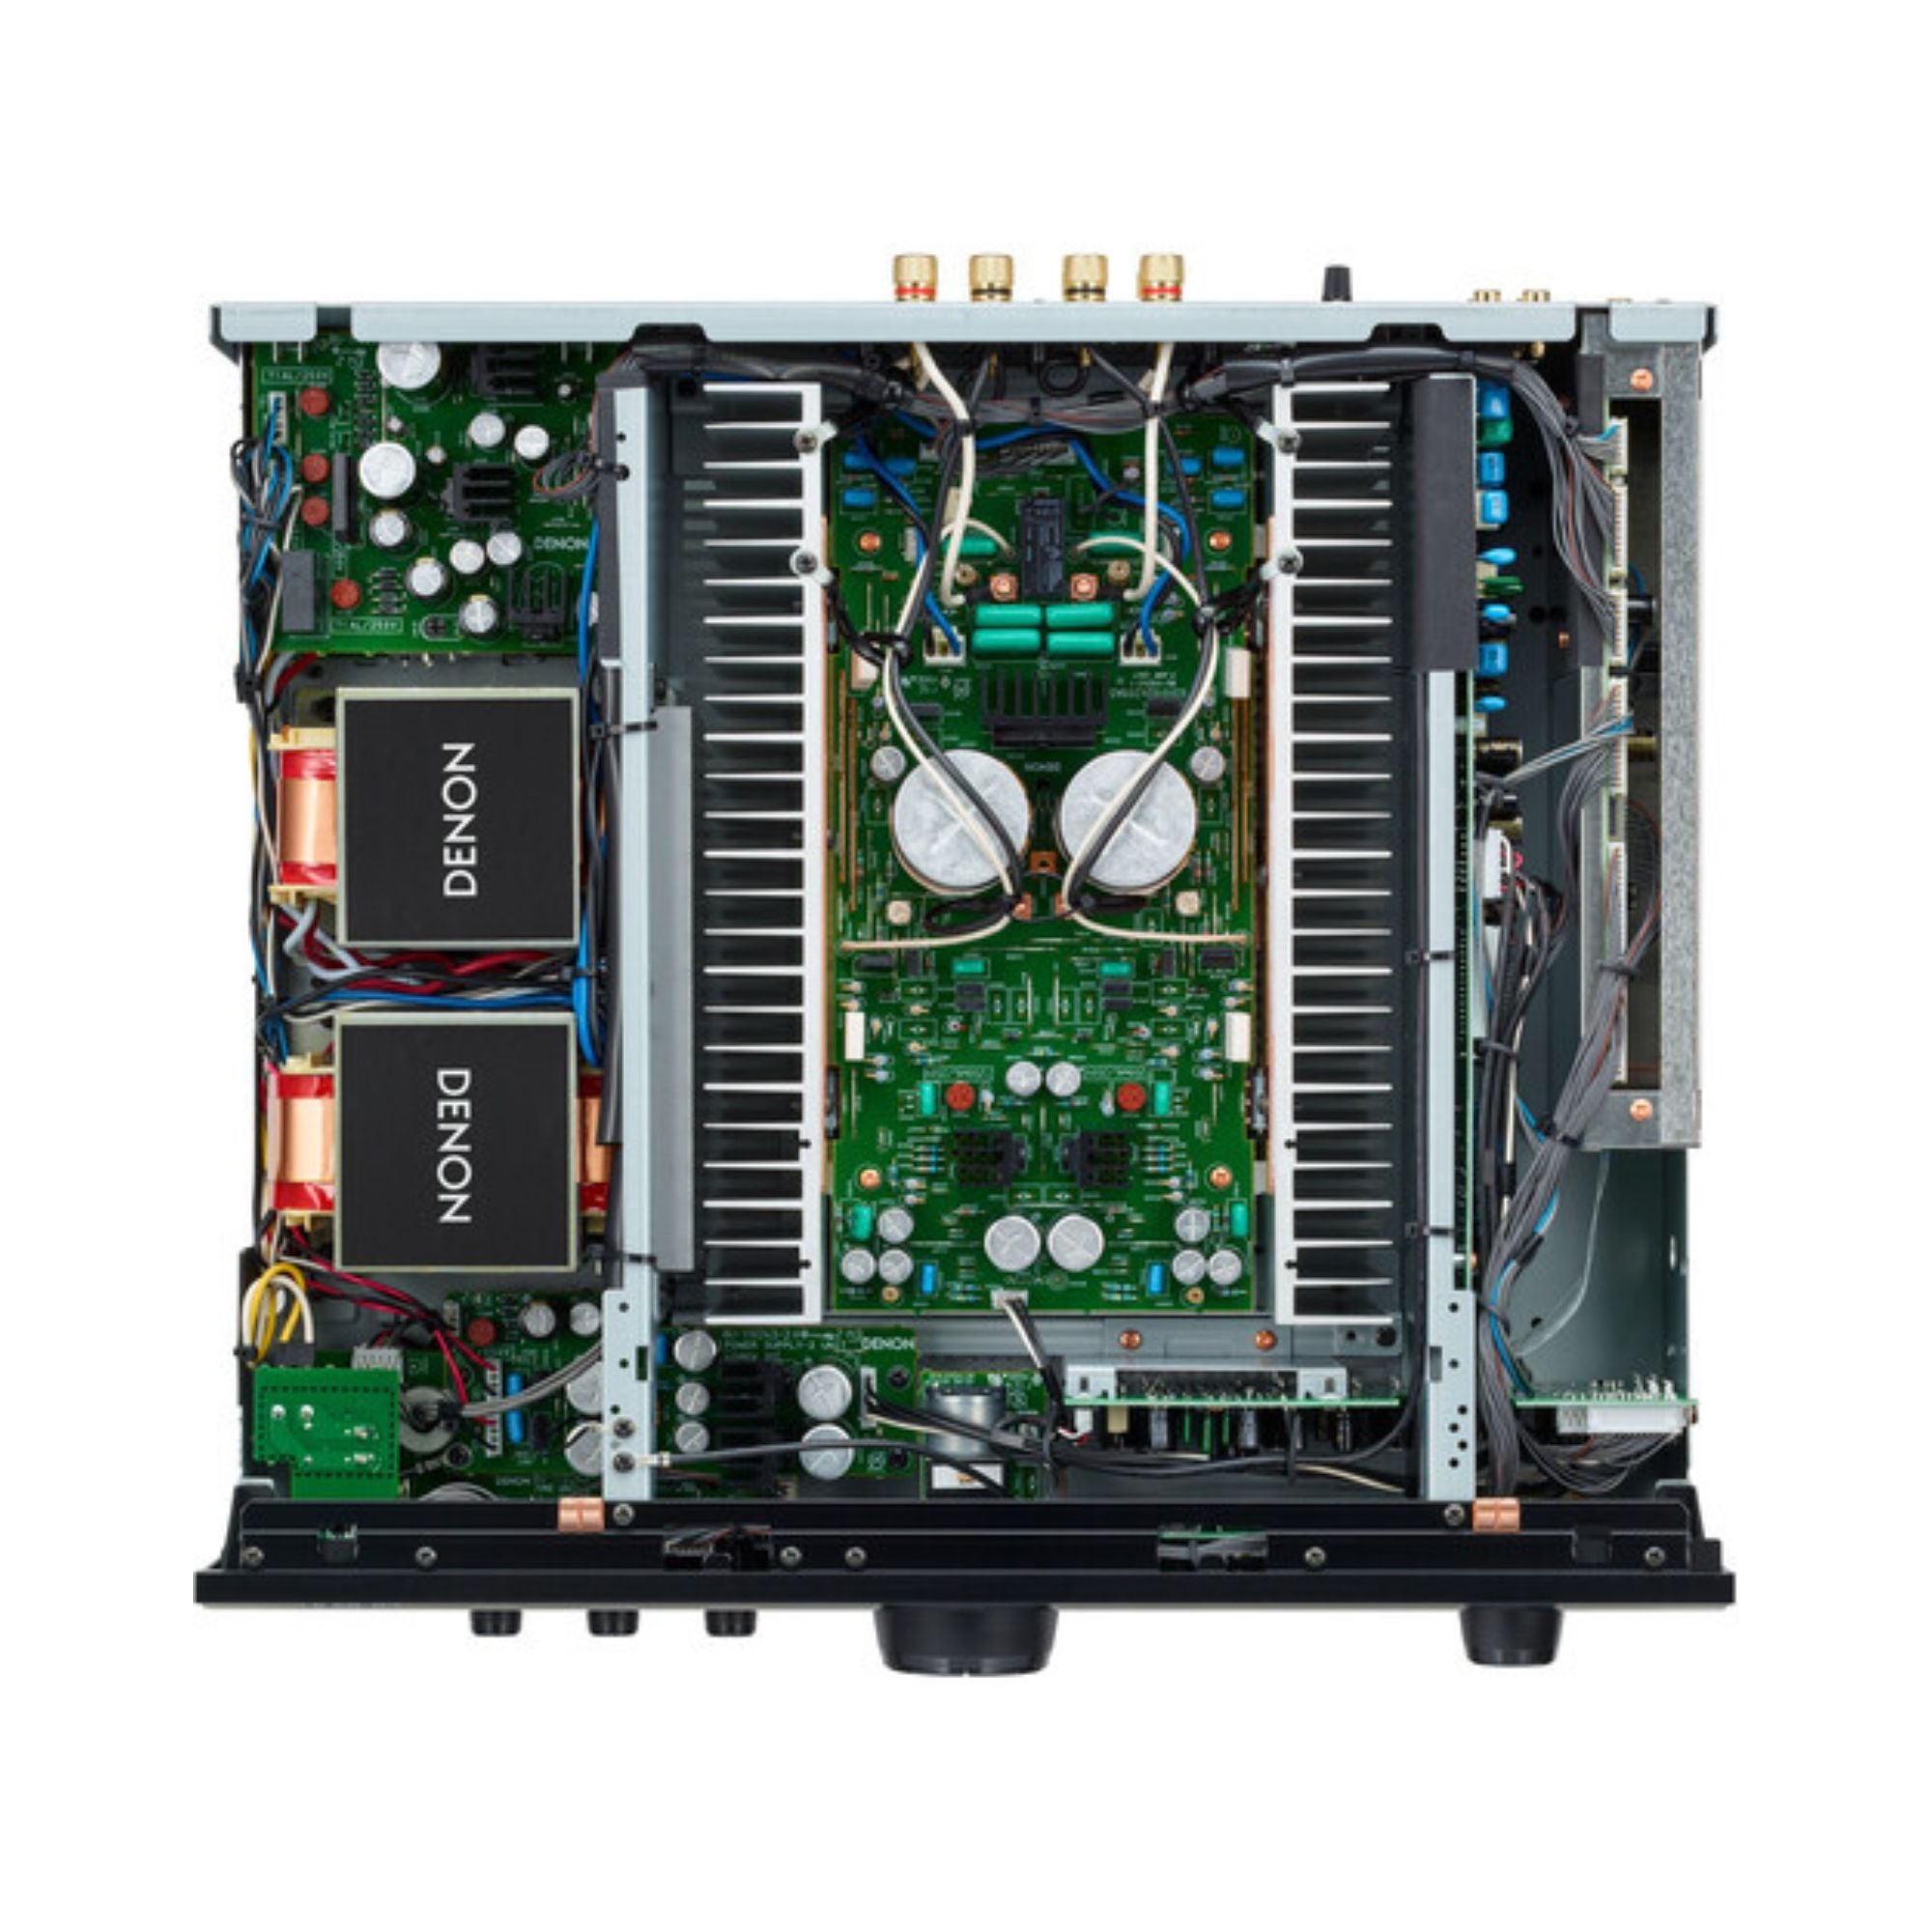 Denon PMA-1700NE 140W Stereo Integrated Amplifier, Denon, Integrated Amplifier - AVStore.in